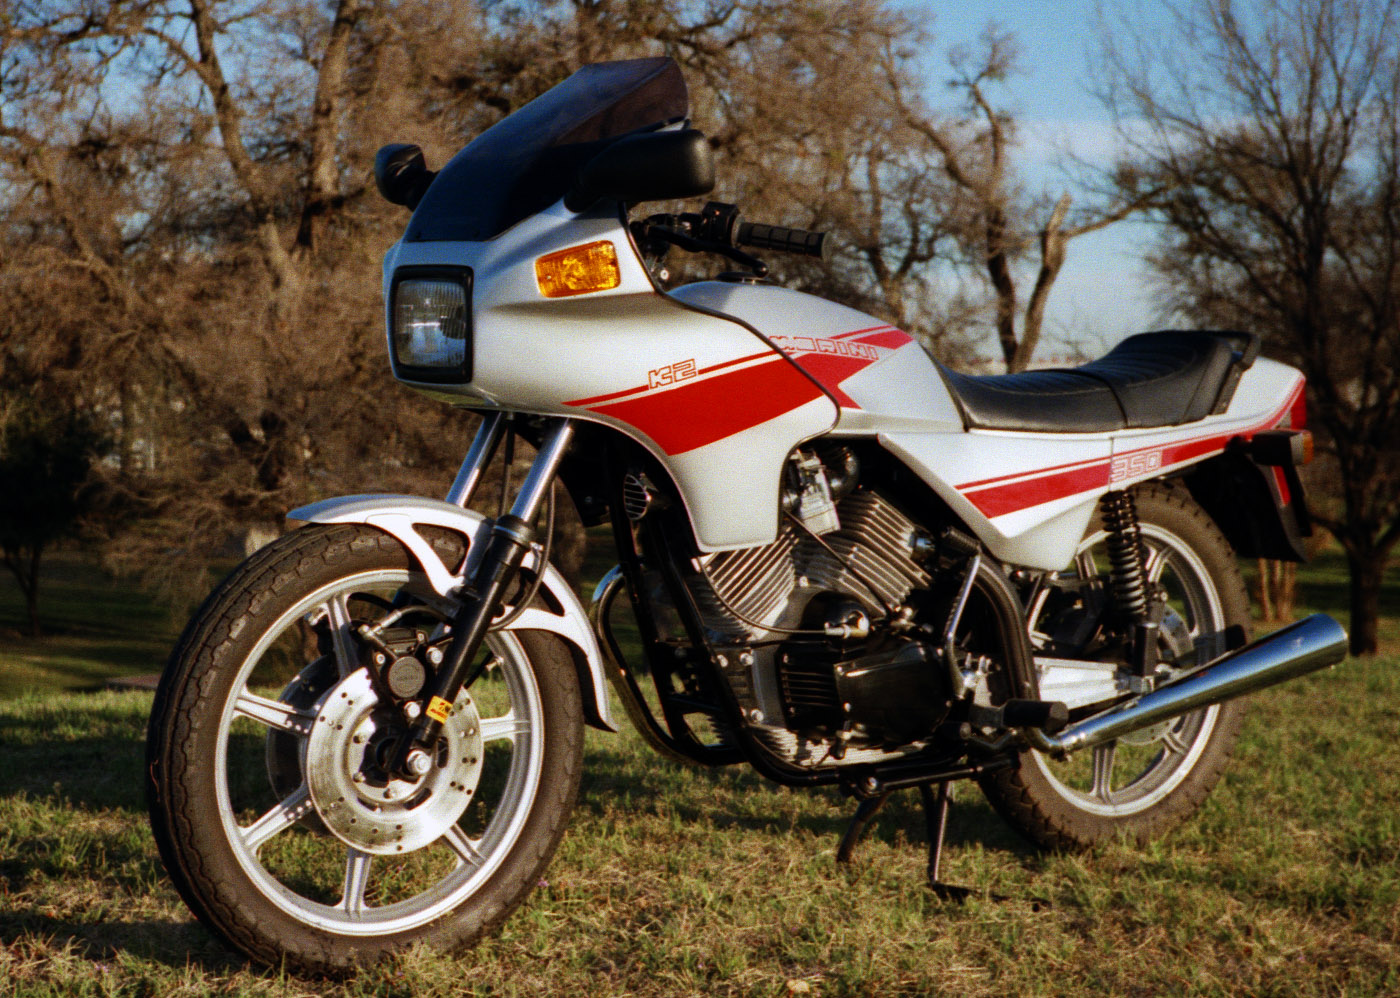 Moto Morini 350 K 2 1986 photo - 1